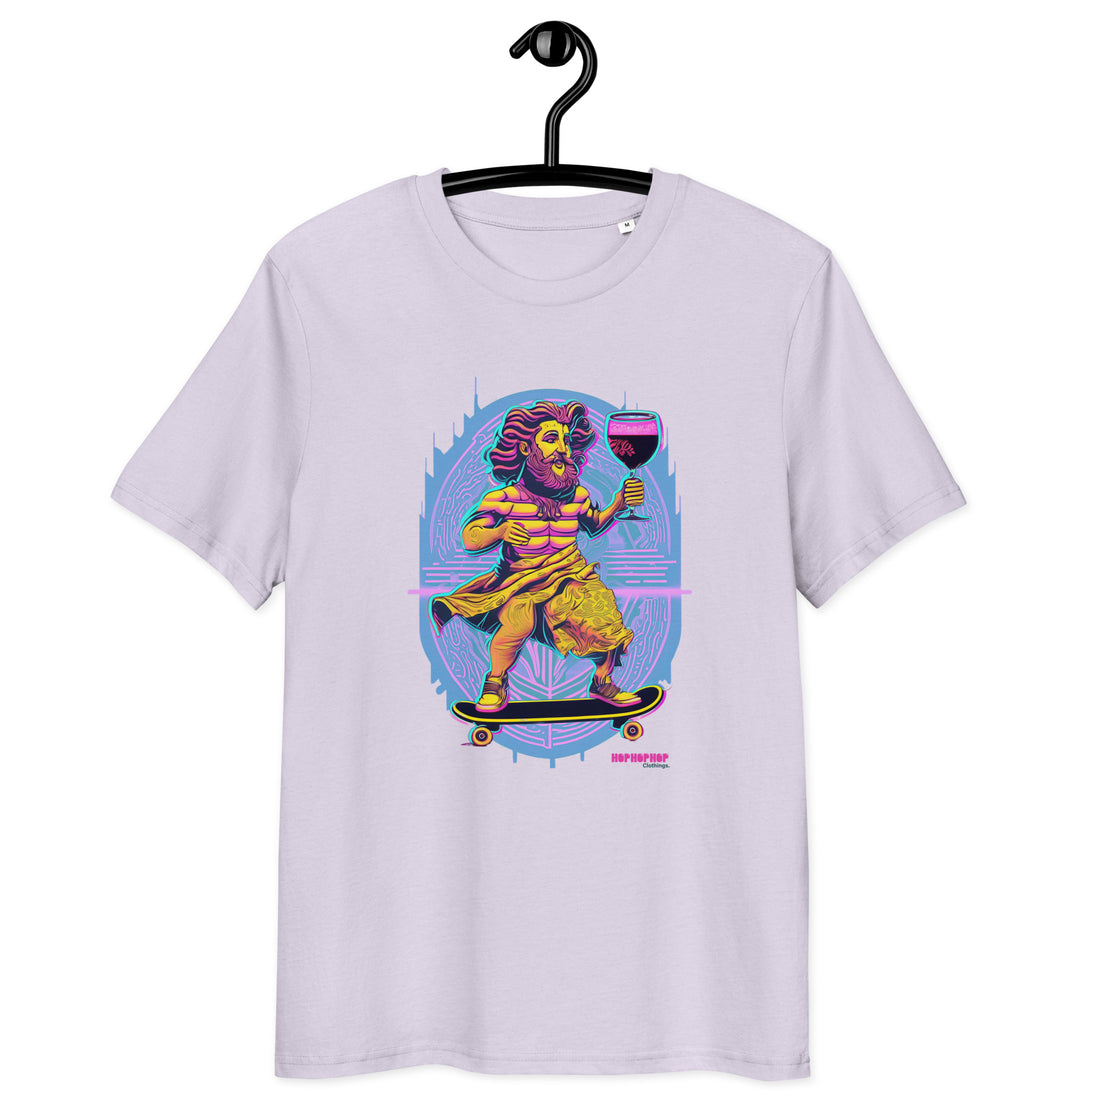 Hop Hop Hop - DVS - Bacchus Rider - T-shirt unisexe en coton biologique